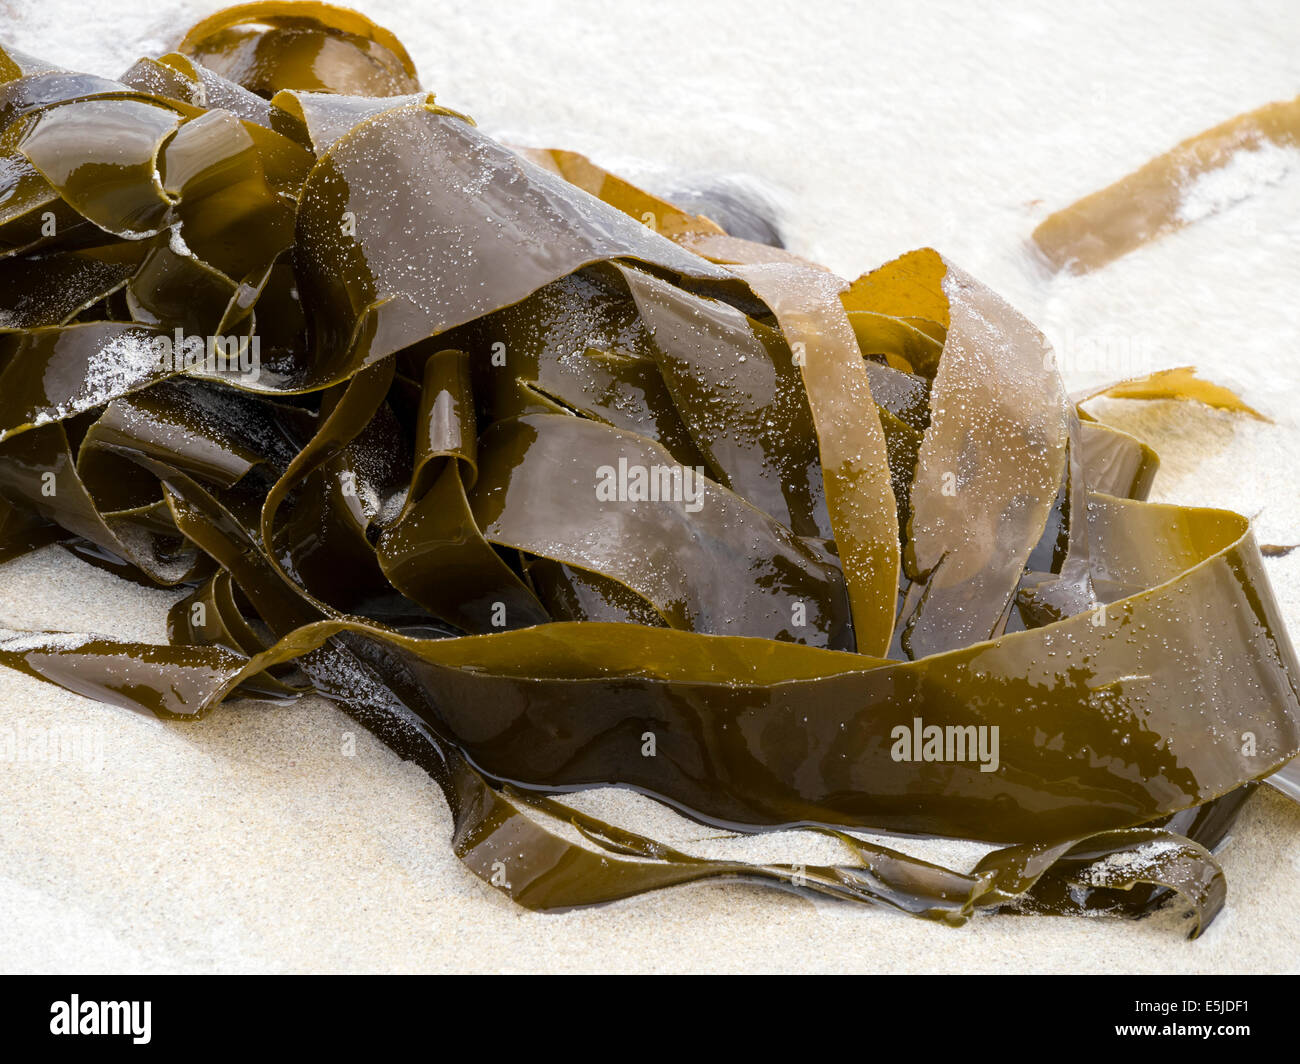 Tangled mare alghe Kelp fronde lavato fino su una sabbiosa spiaggia scozzese, UK. Foto Stock